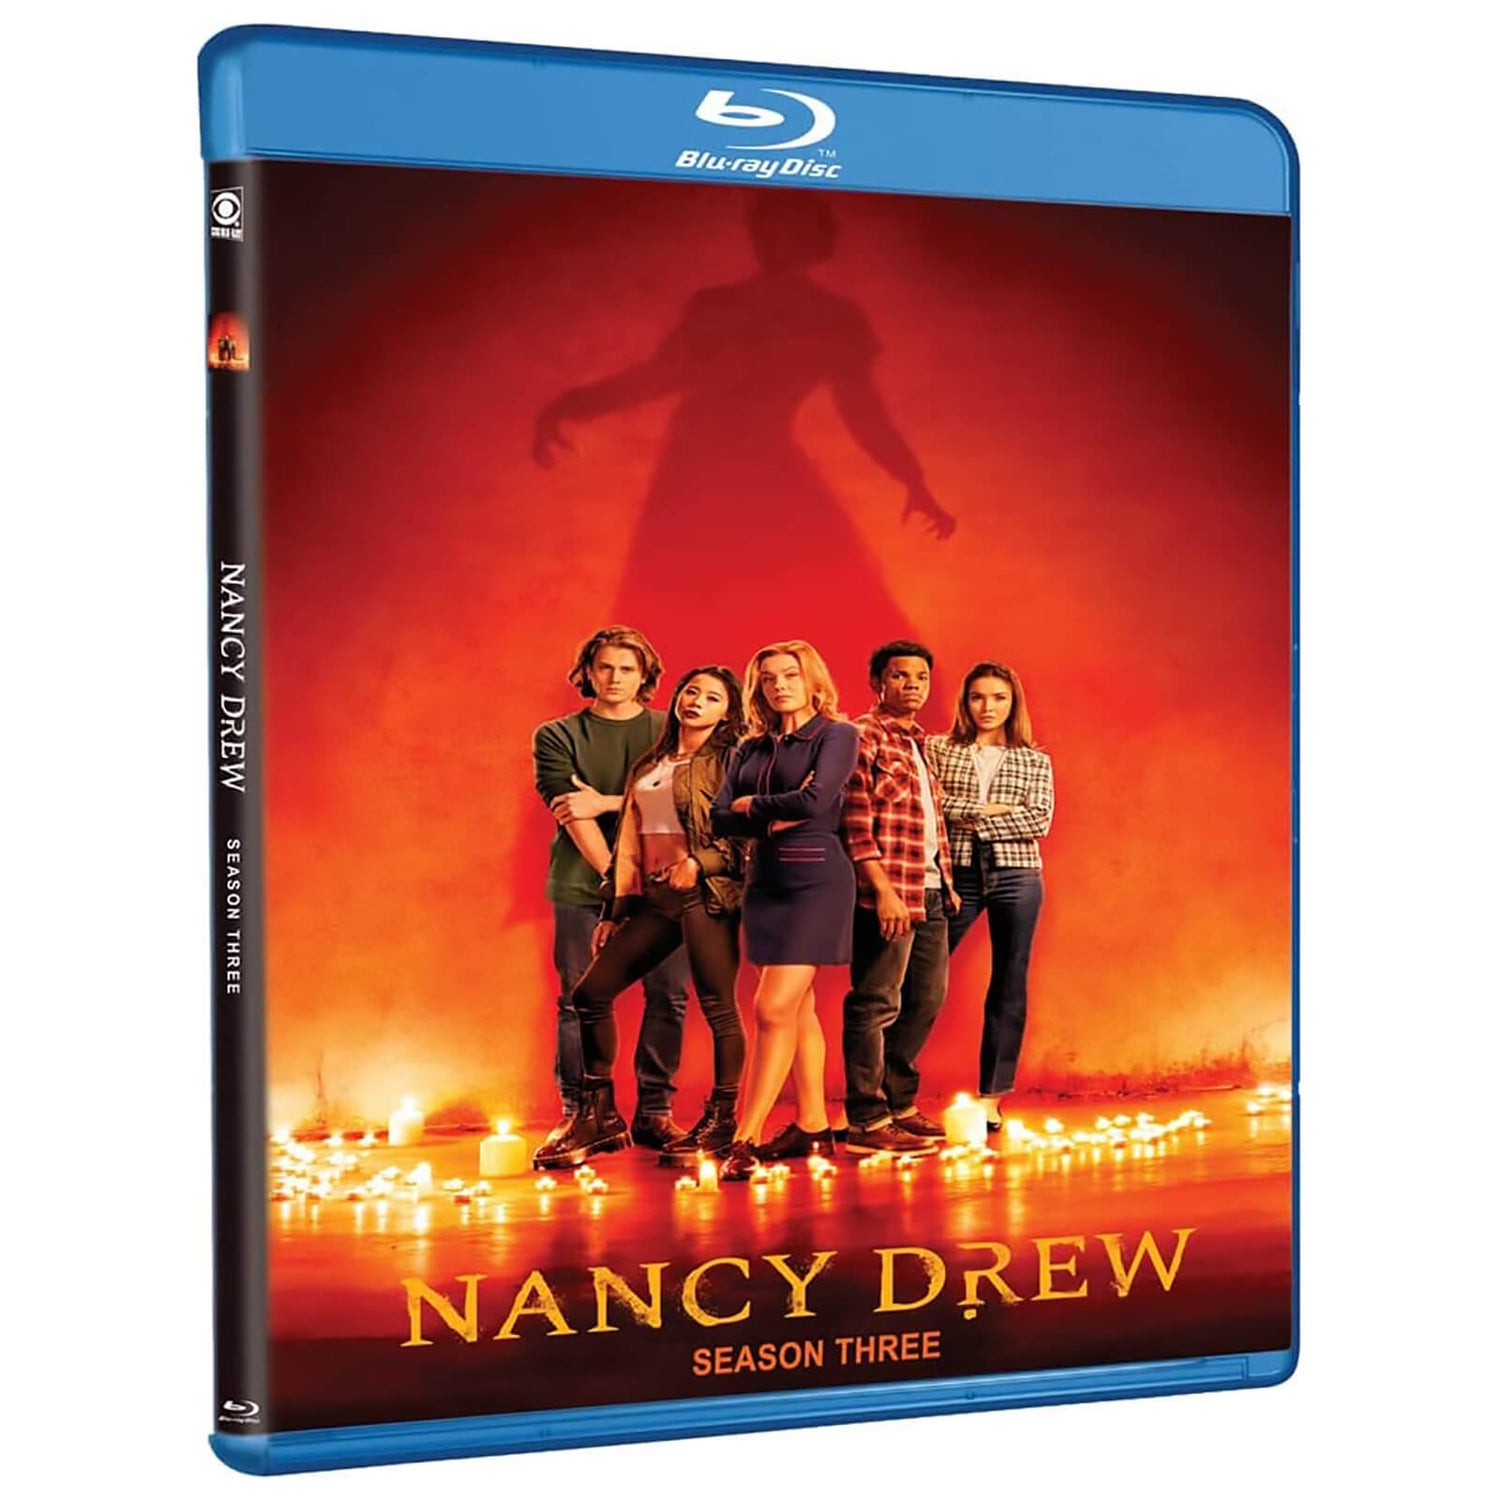 Nancy Drew: Season Three